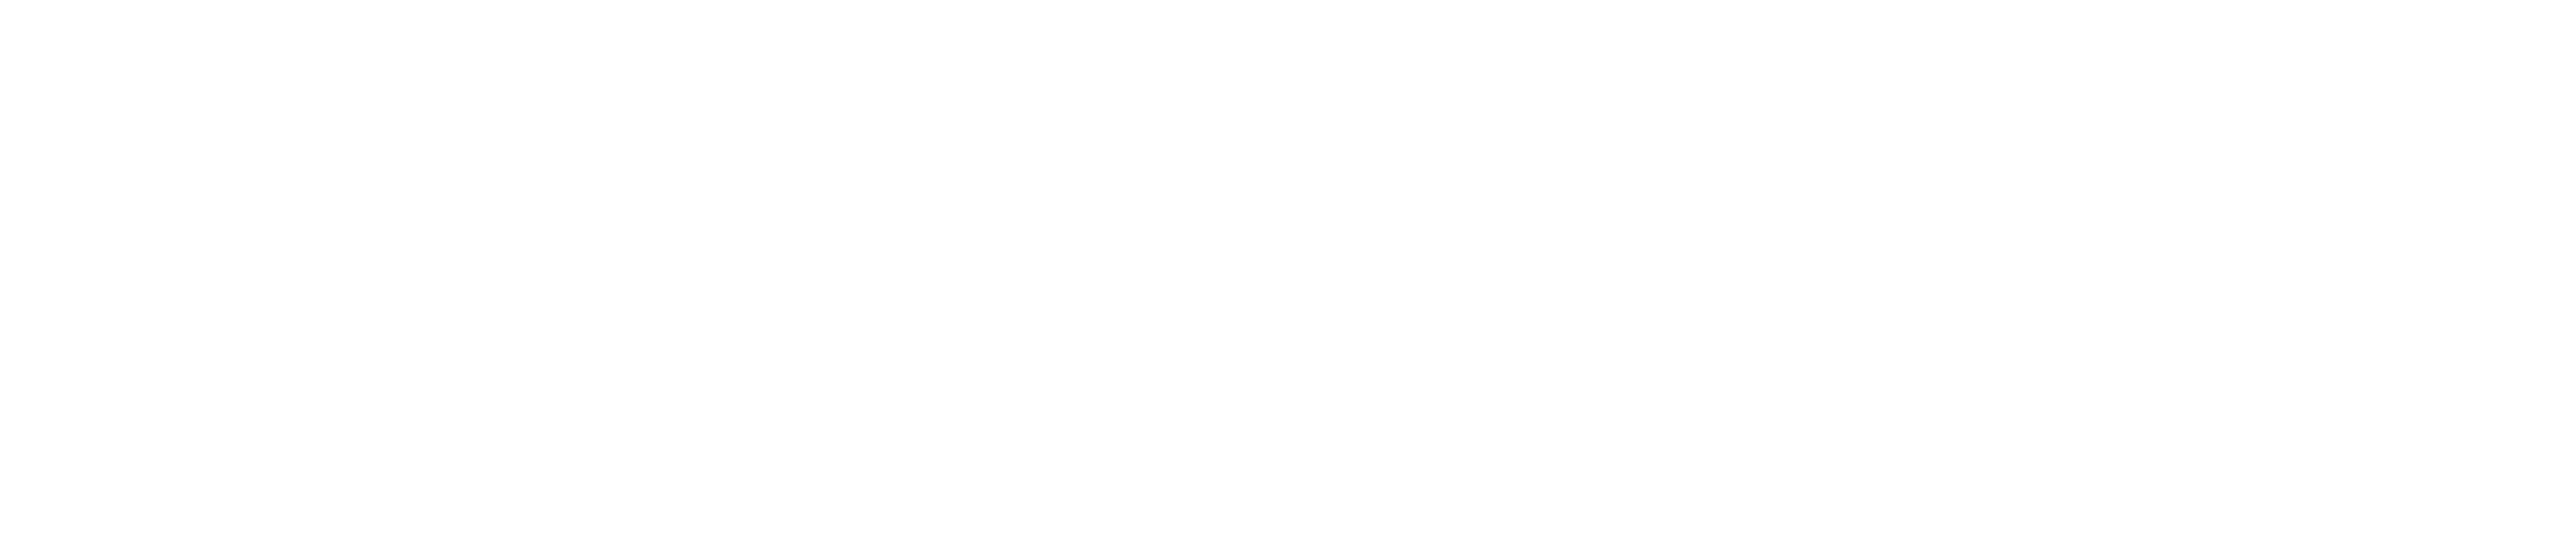 yealink white logo